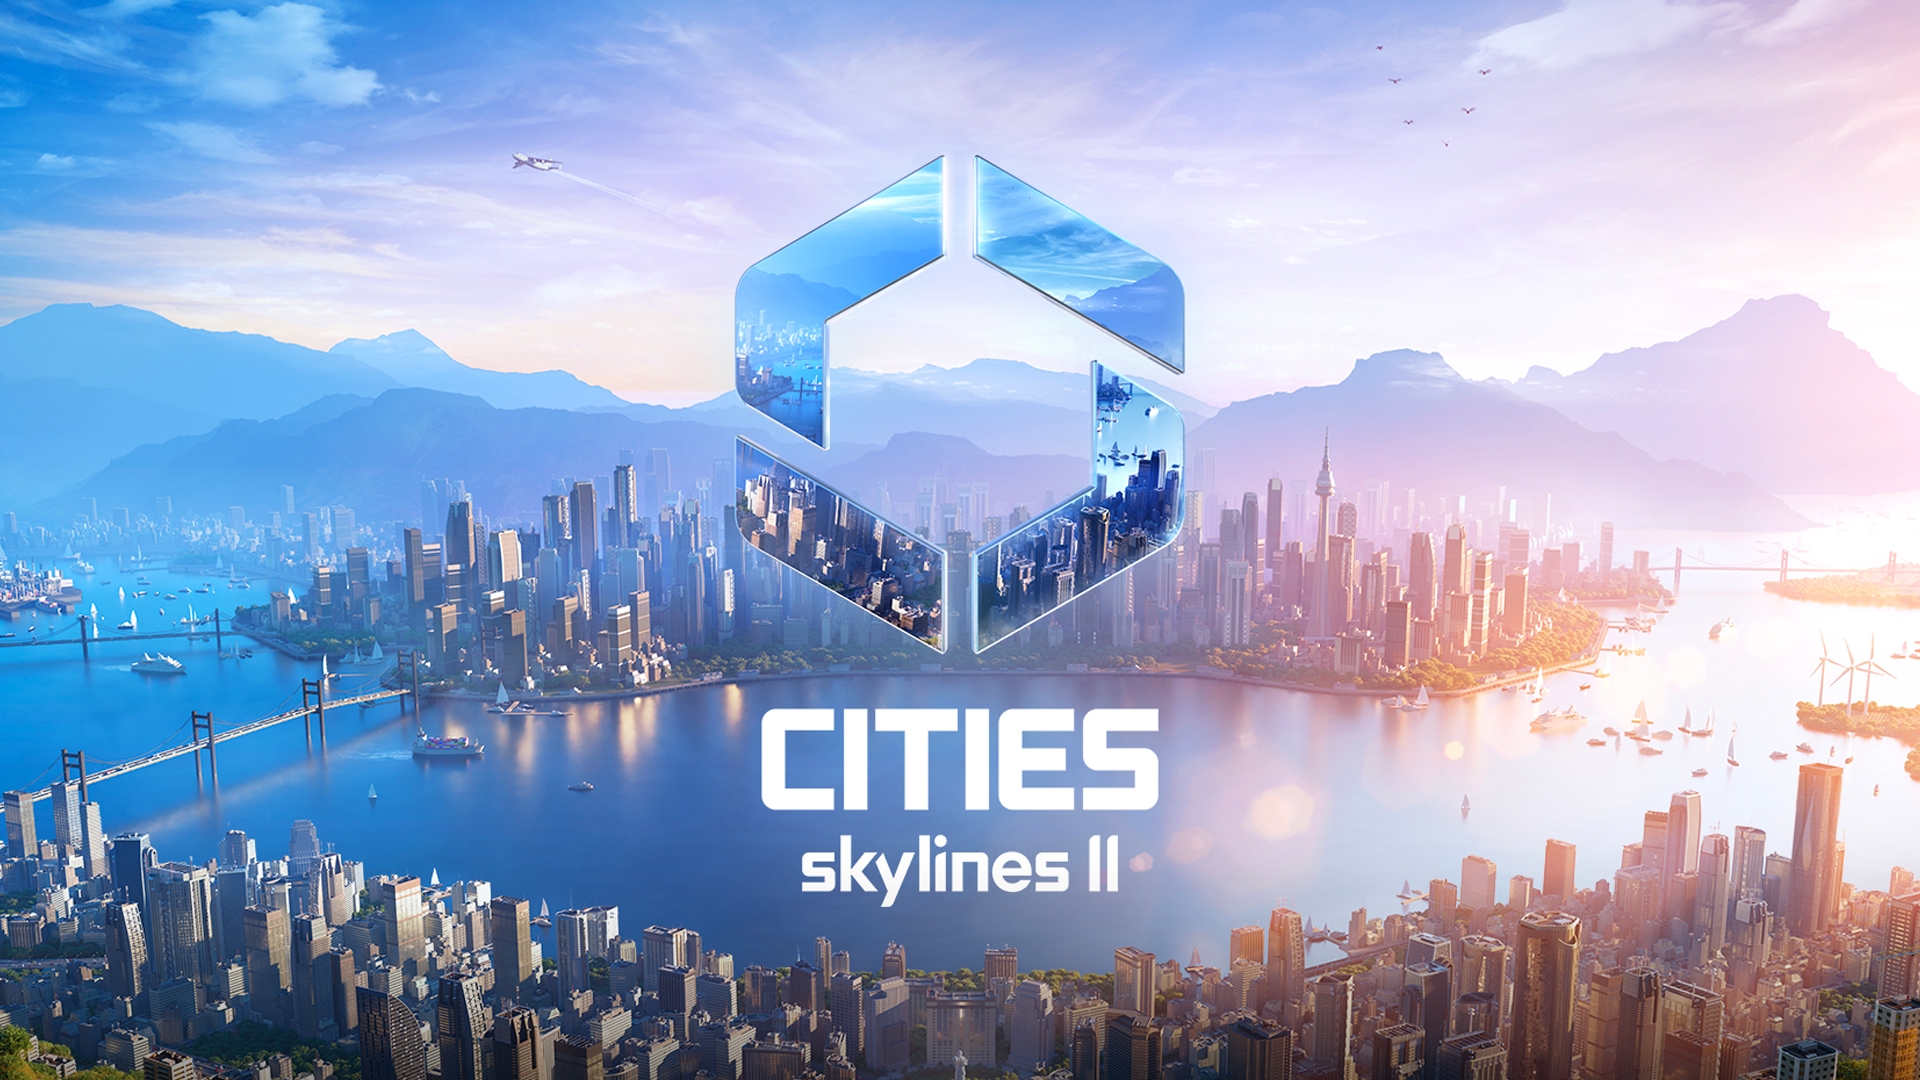 Cities skylines